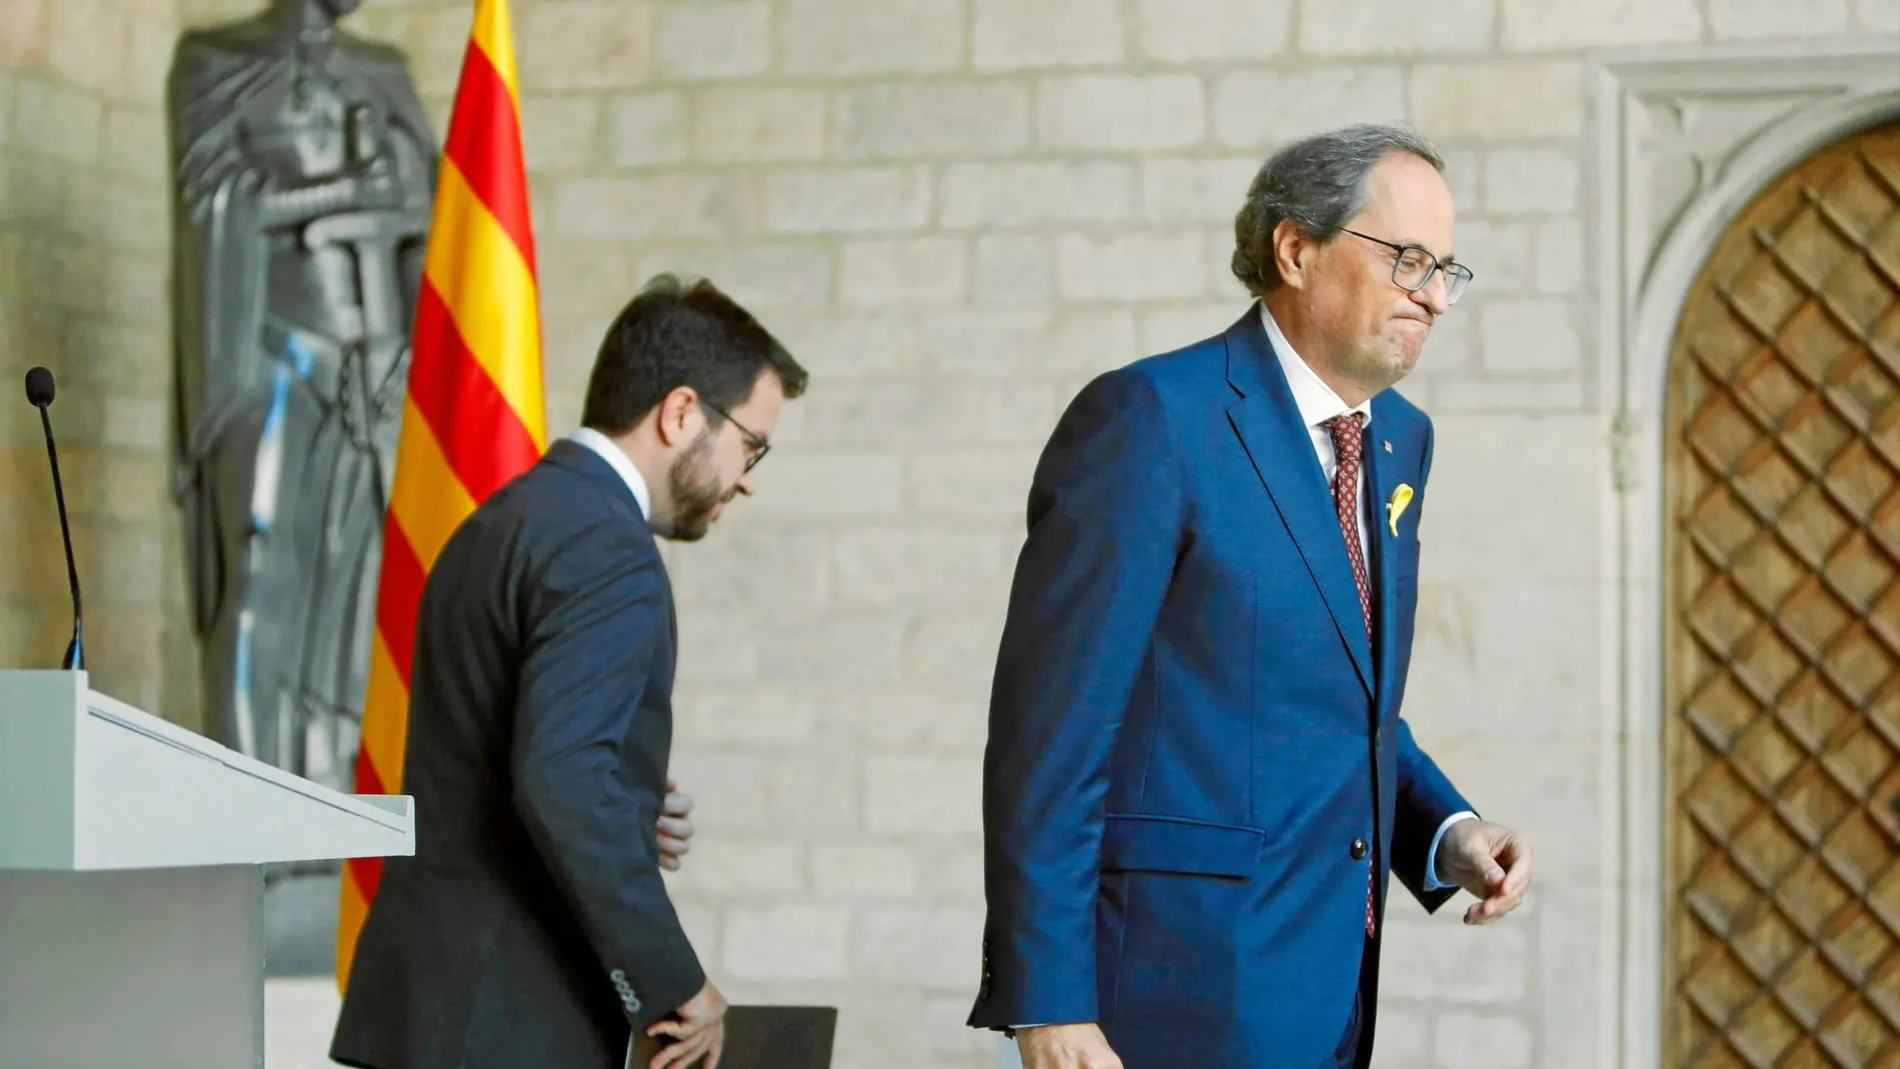 El president Torra con el vicepresidente Pere Aragonès tras cerrar en falso la crisis de gobierno este mismo otoño. Foto: Miquel González / Shooting